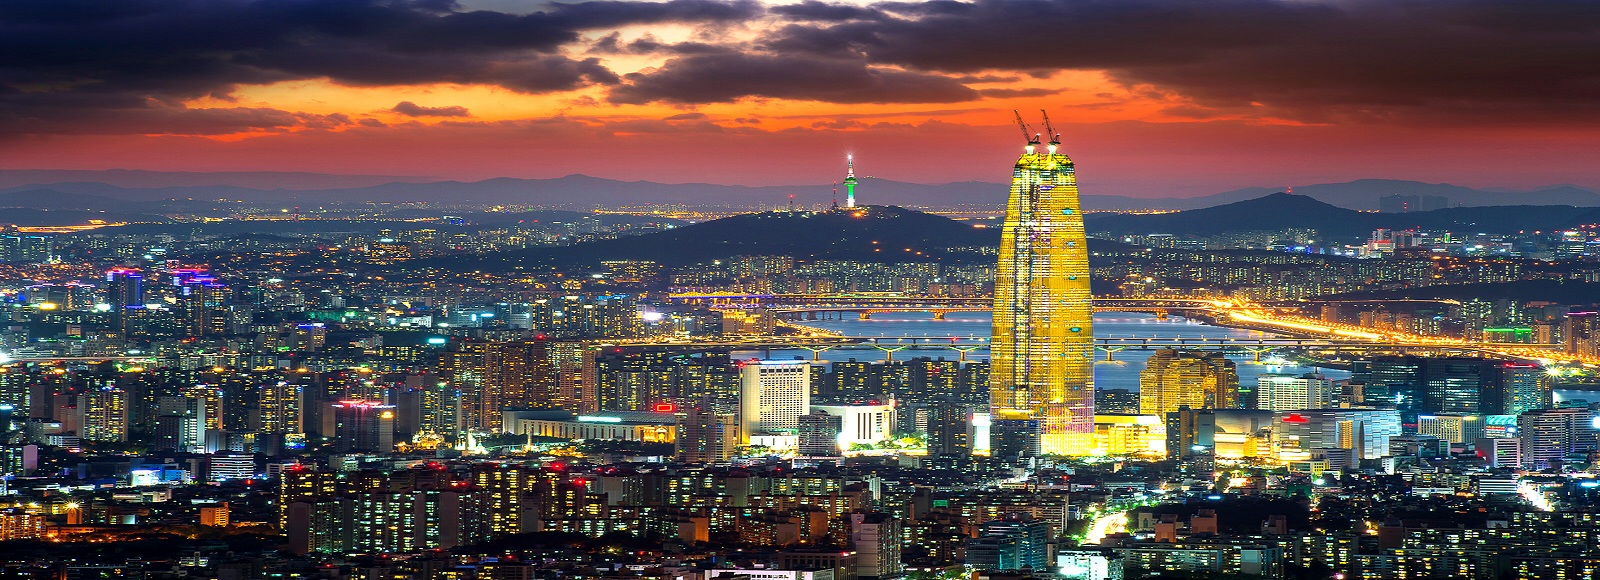 Ofertas de Traslados en Seúl. Traslados económicos en Seúl 